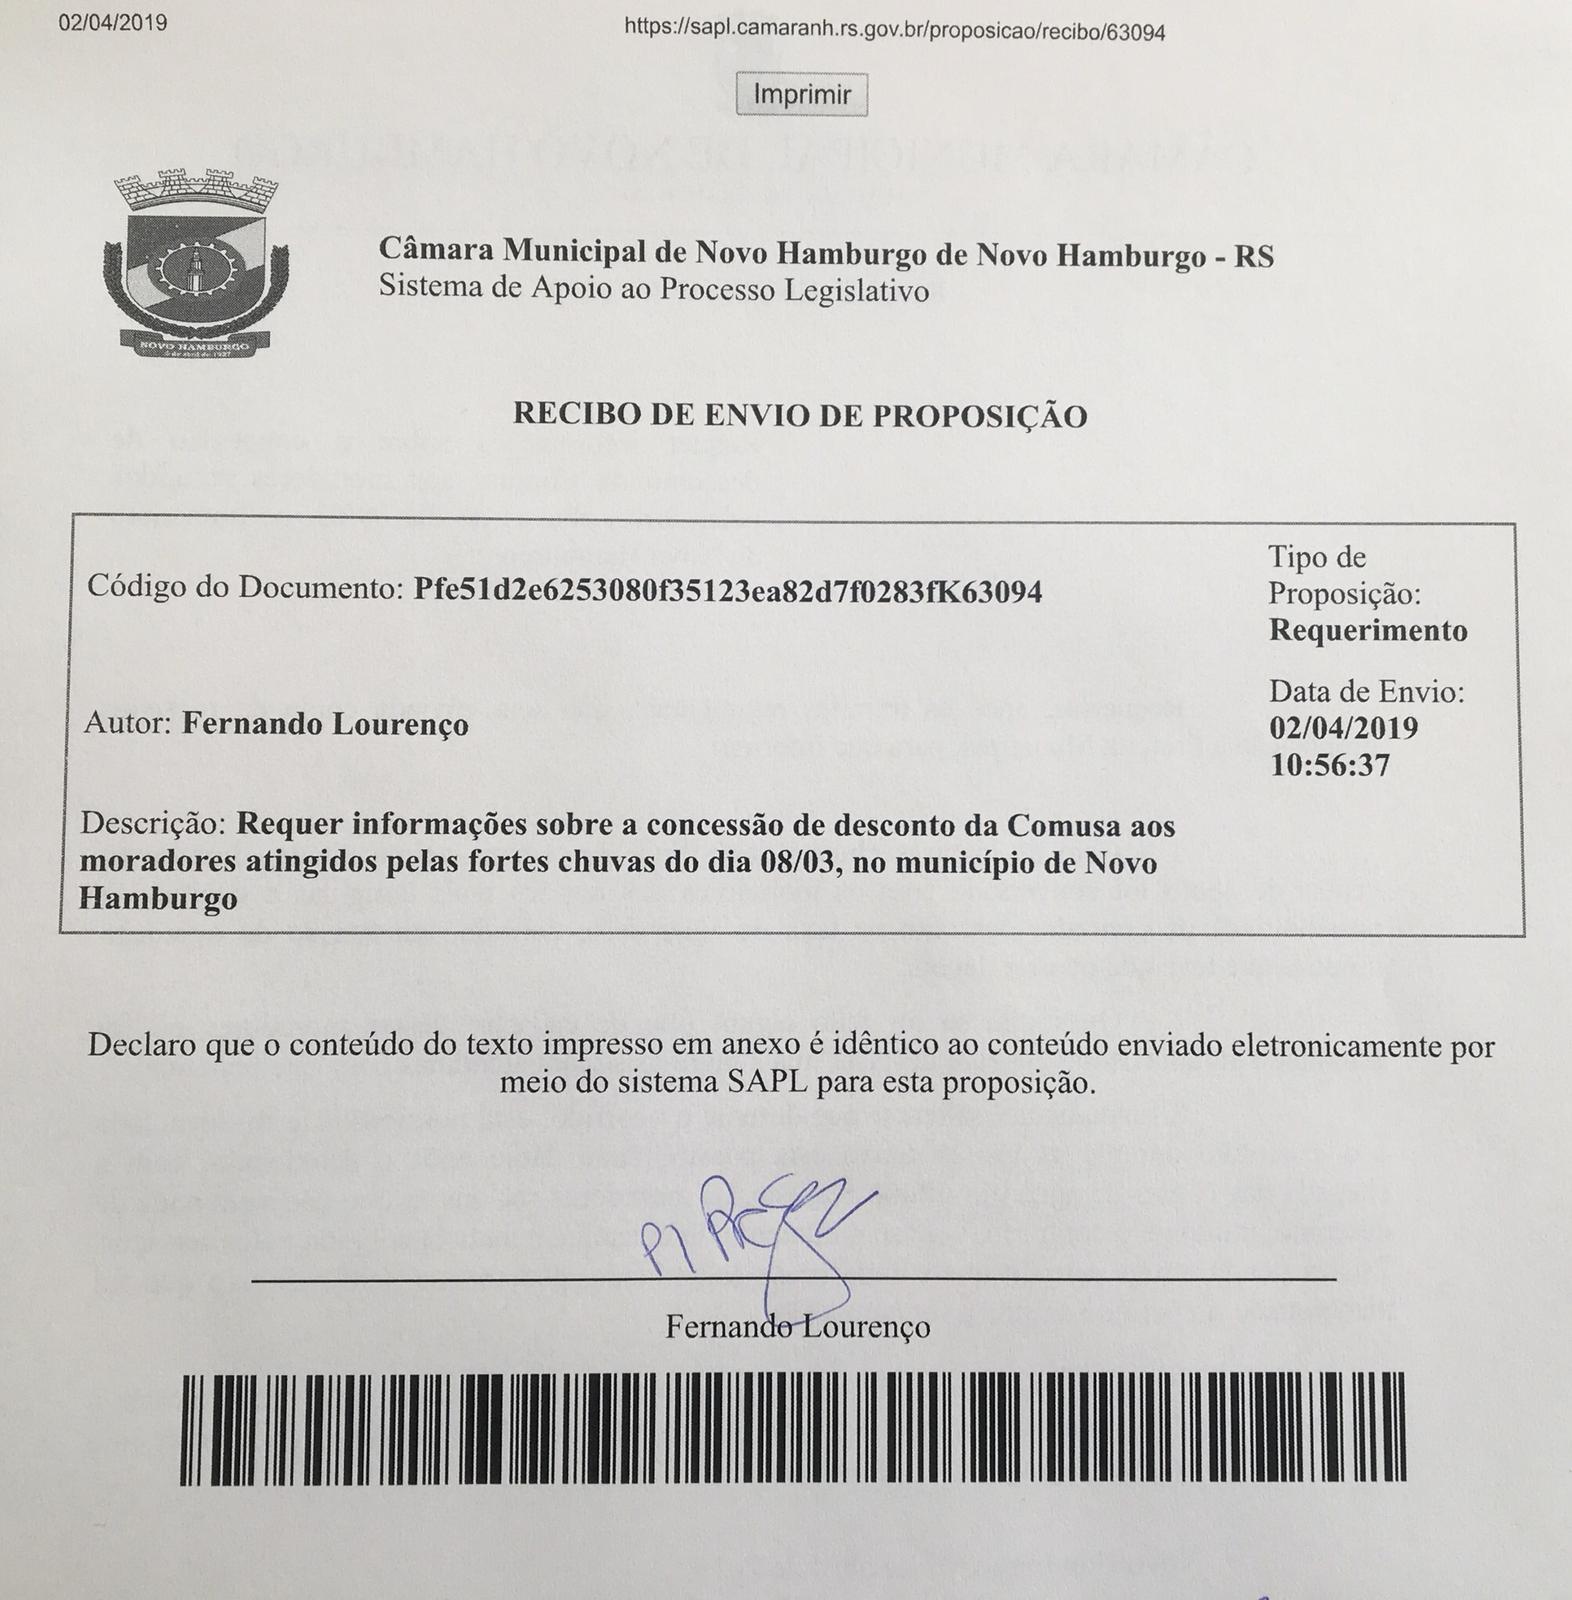 03/04/2019 - Fernando Lourenço requisita informações sobre descontos em contas de água